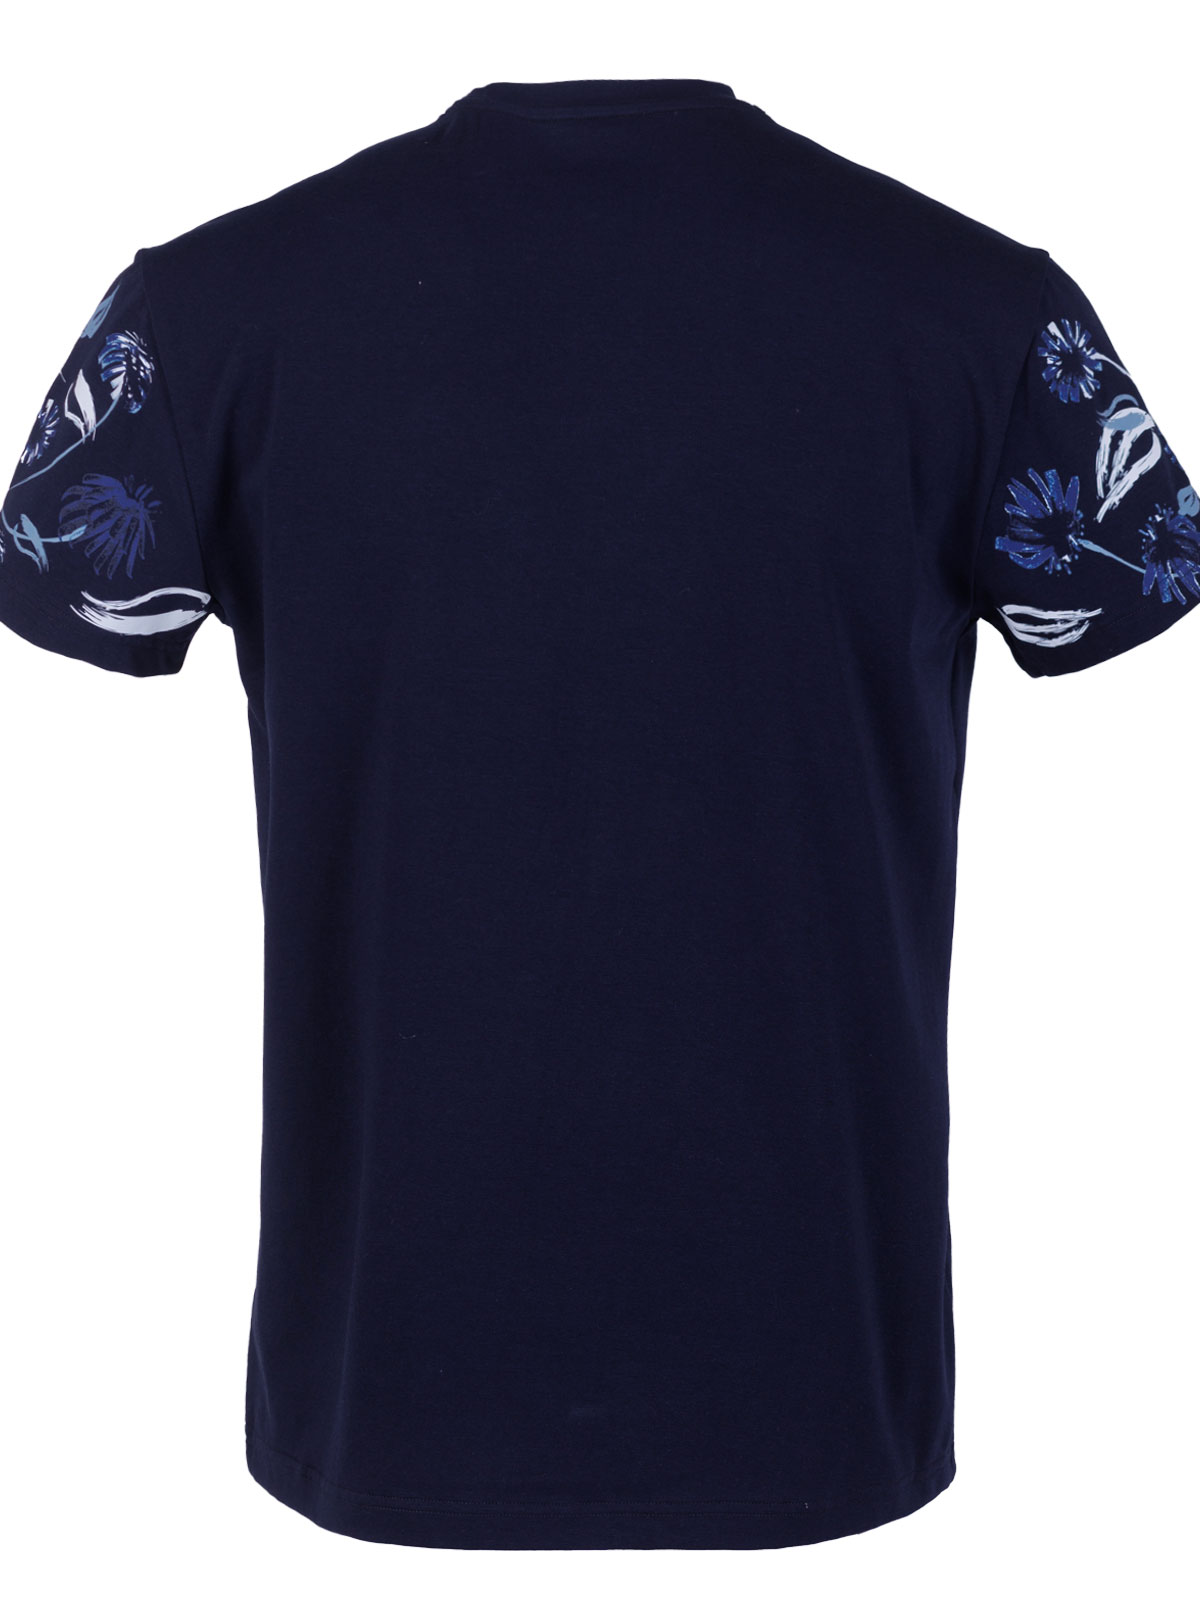 Тениска в синьо с печат цветя - 96472 49.00 лв img2